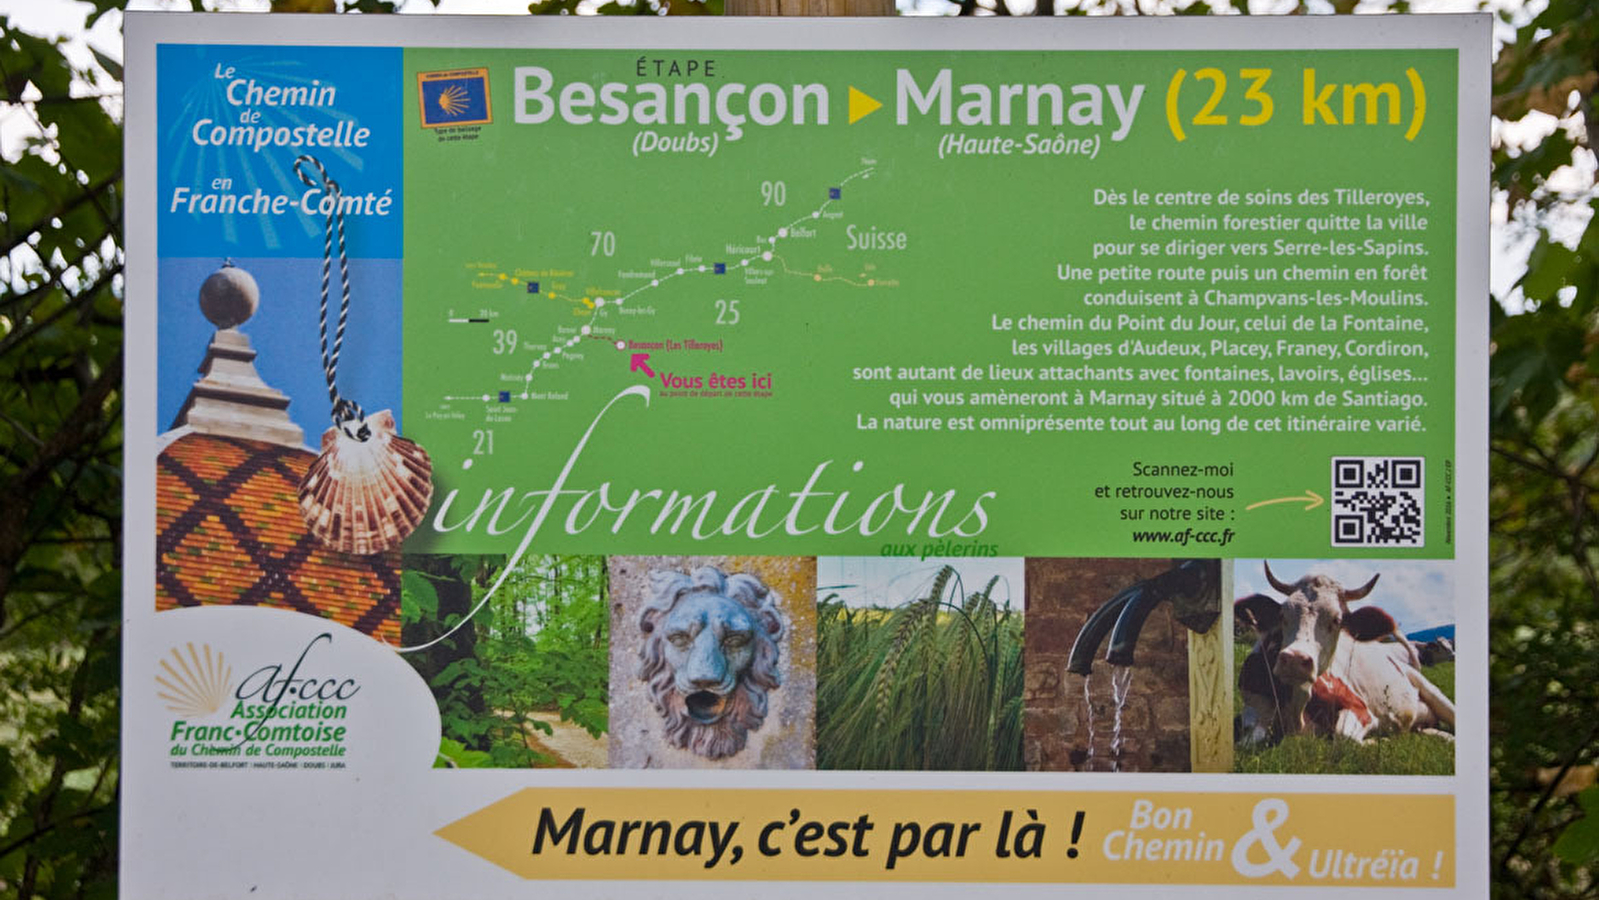 Chemin de Compostelle - Bretelle Besançon Marnay AF-CCC